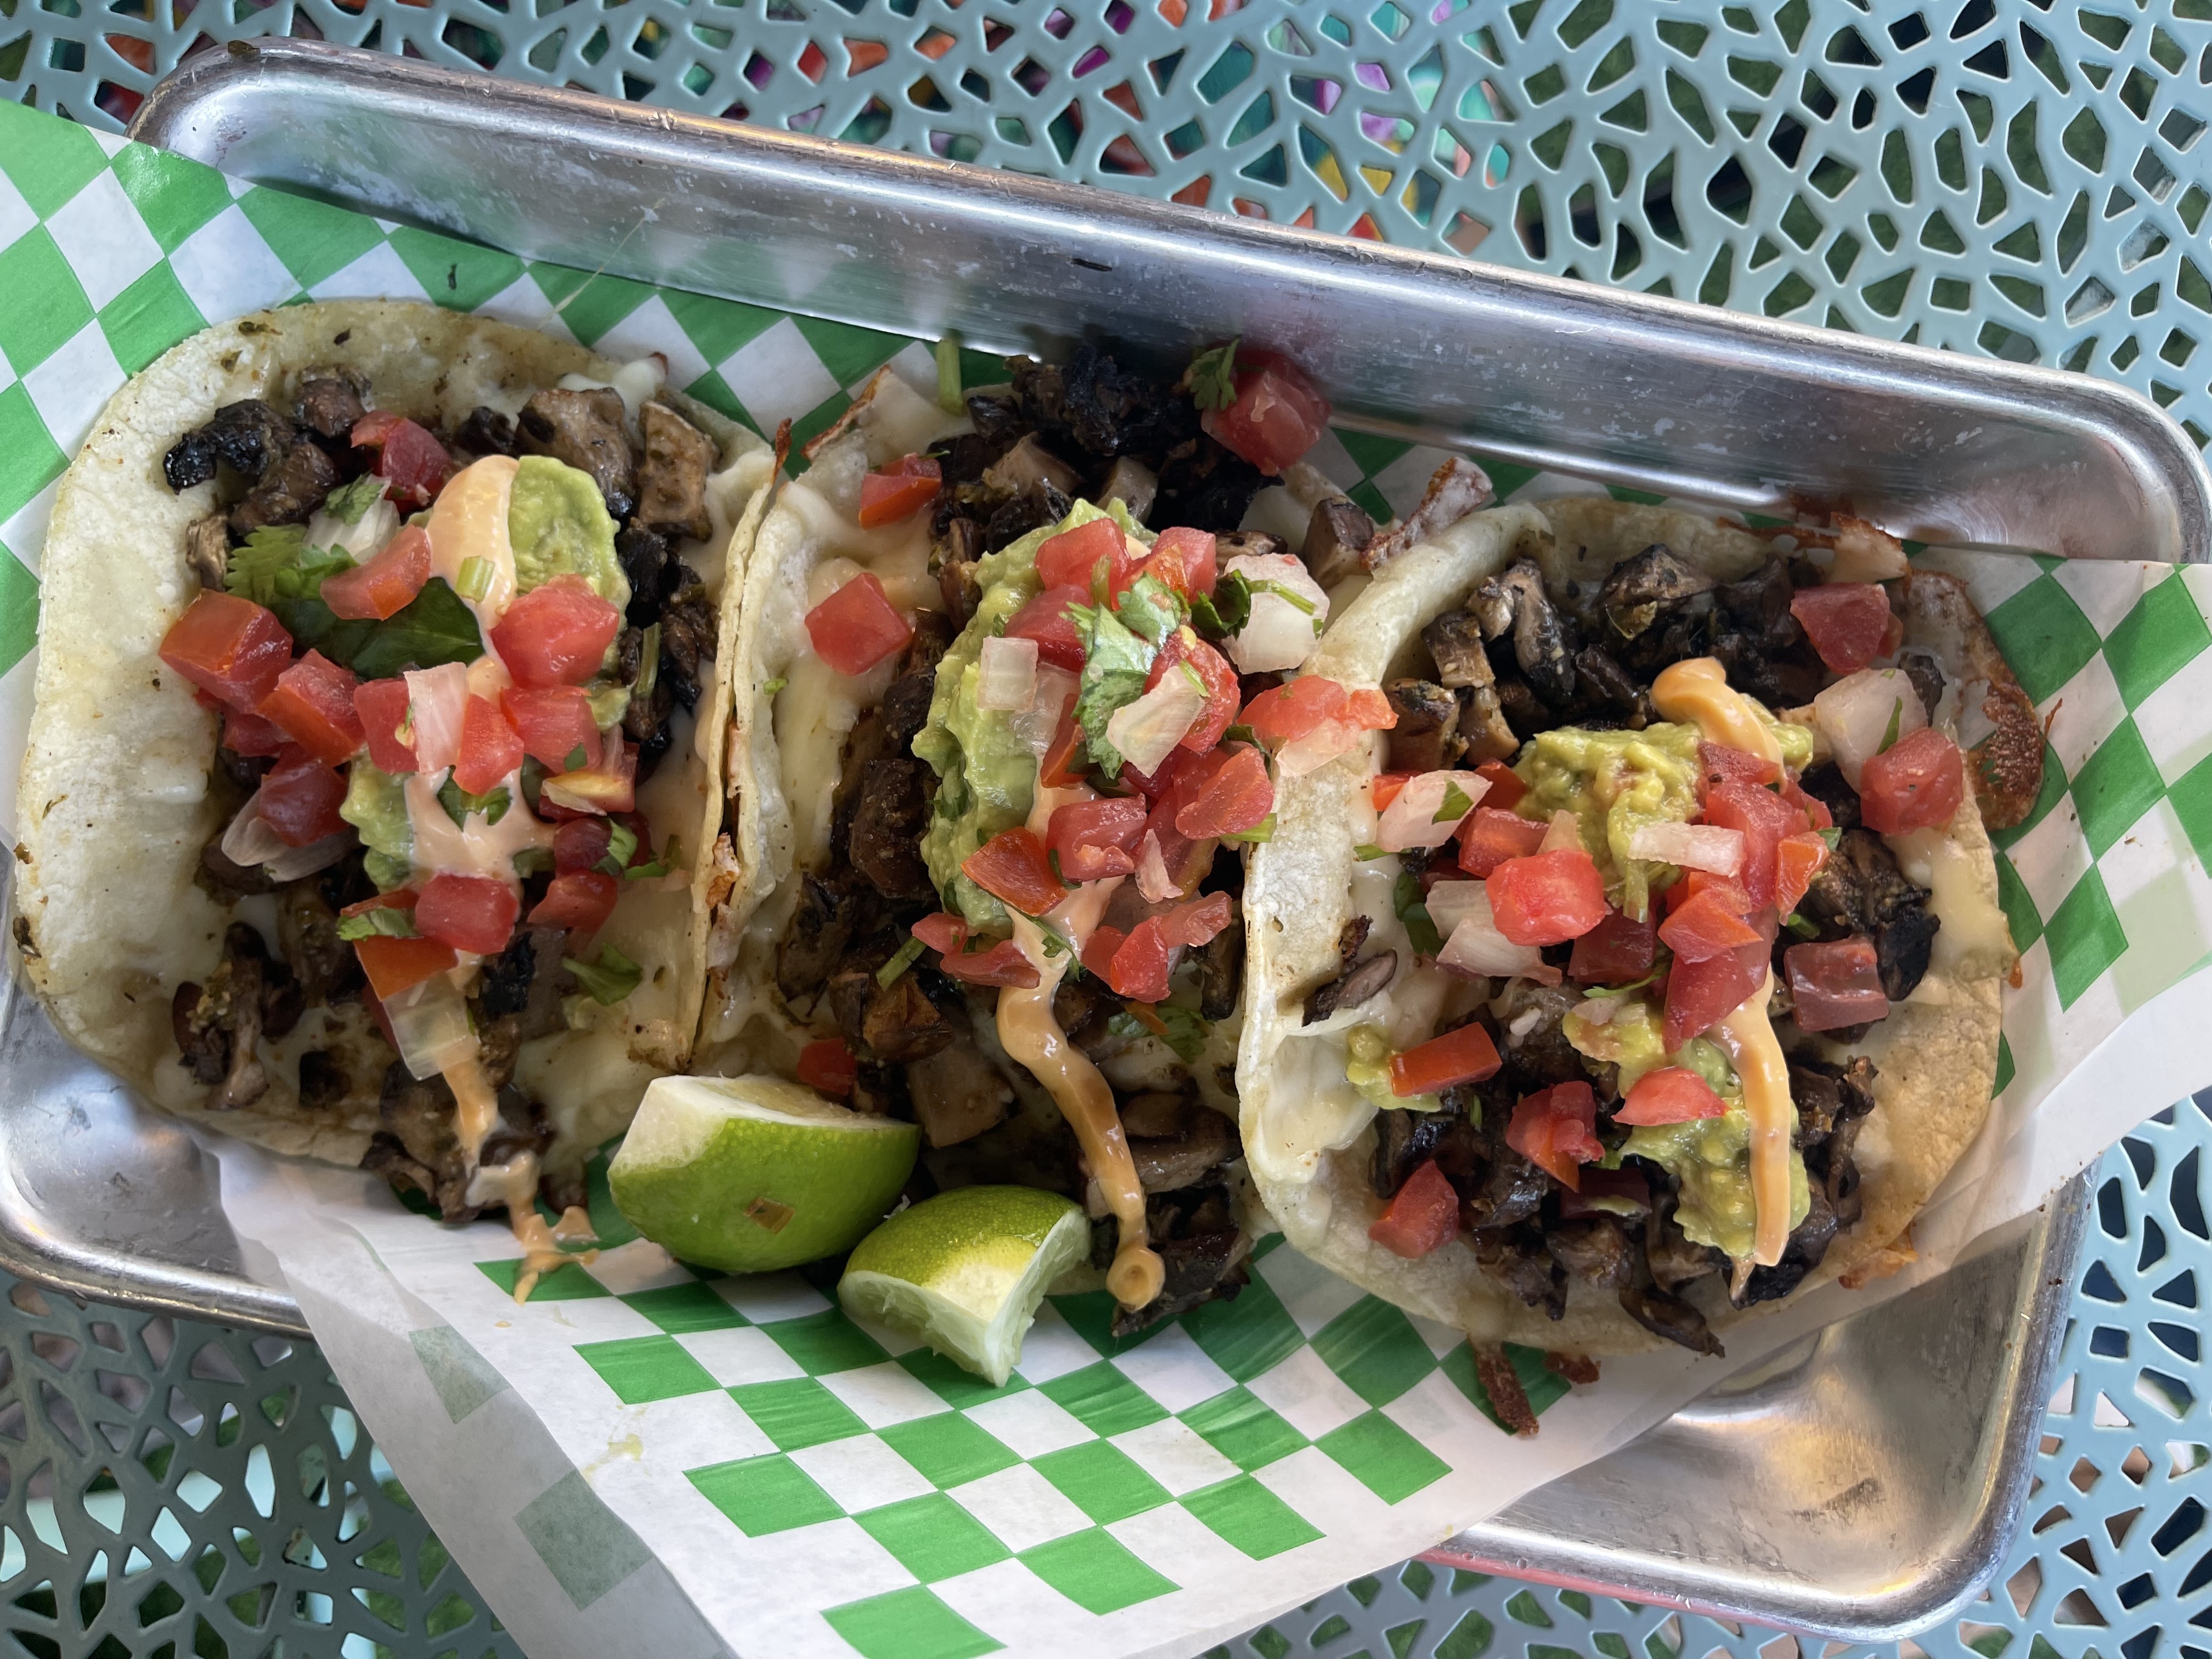 Best Tacos in Tampa? Los Chapos Tacos in Ybor City